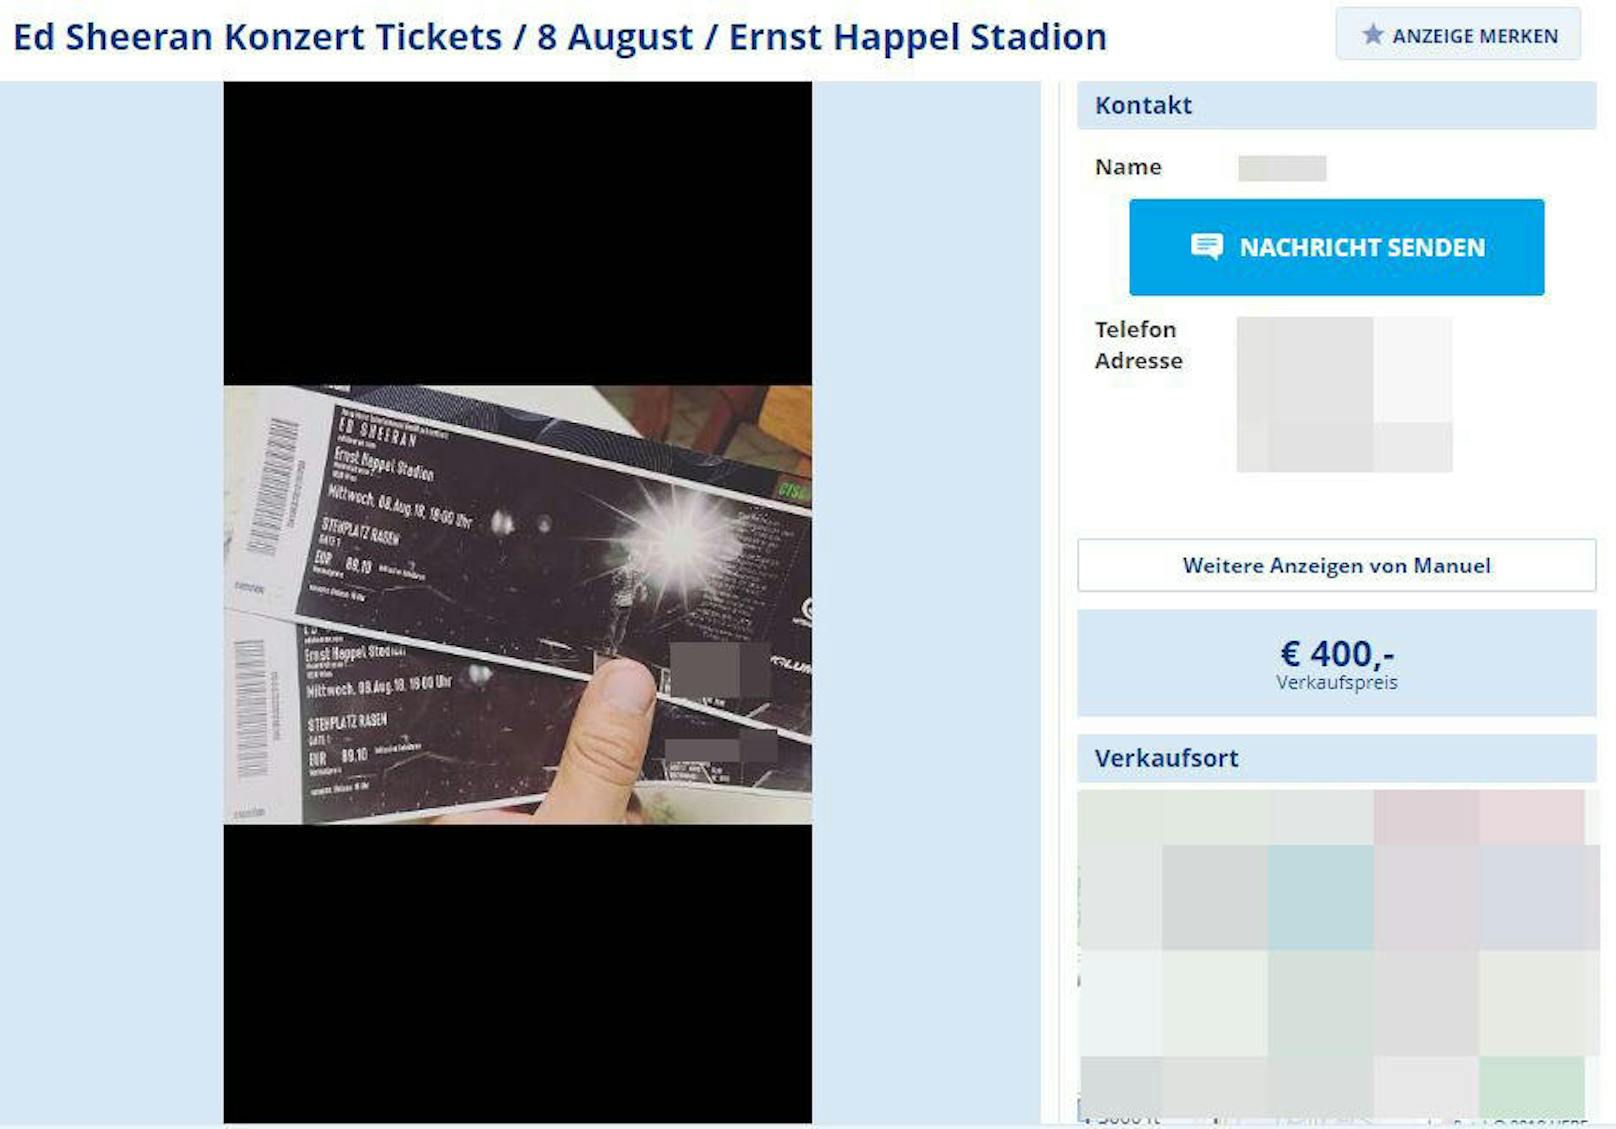 Ticketpreise für Ed Sheeran-Konzerte